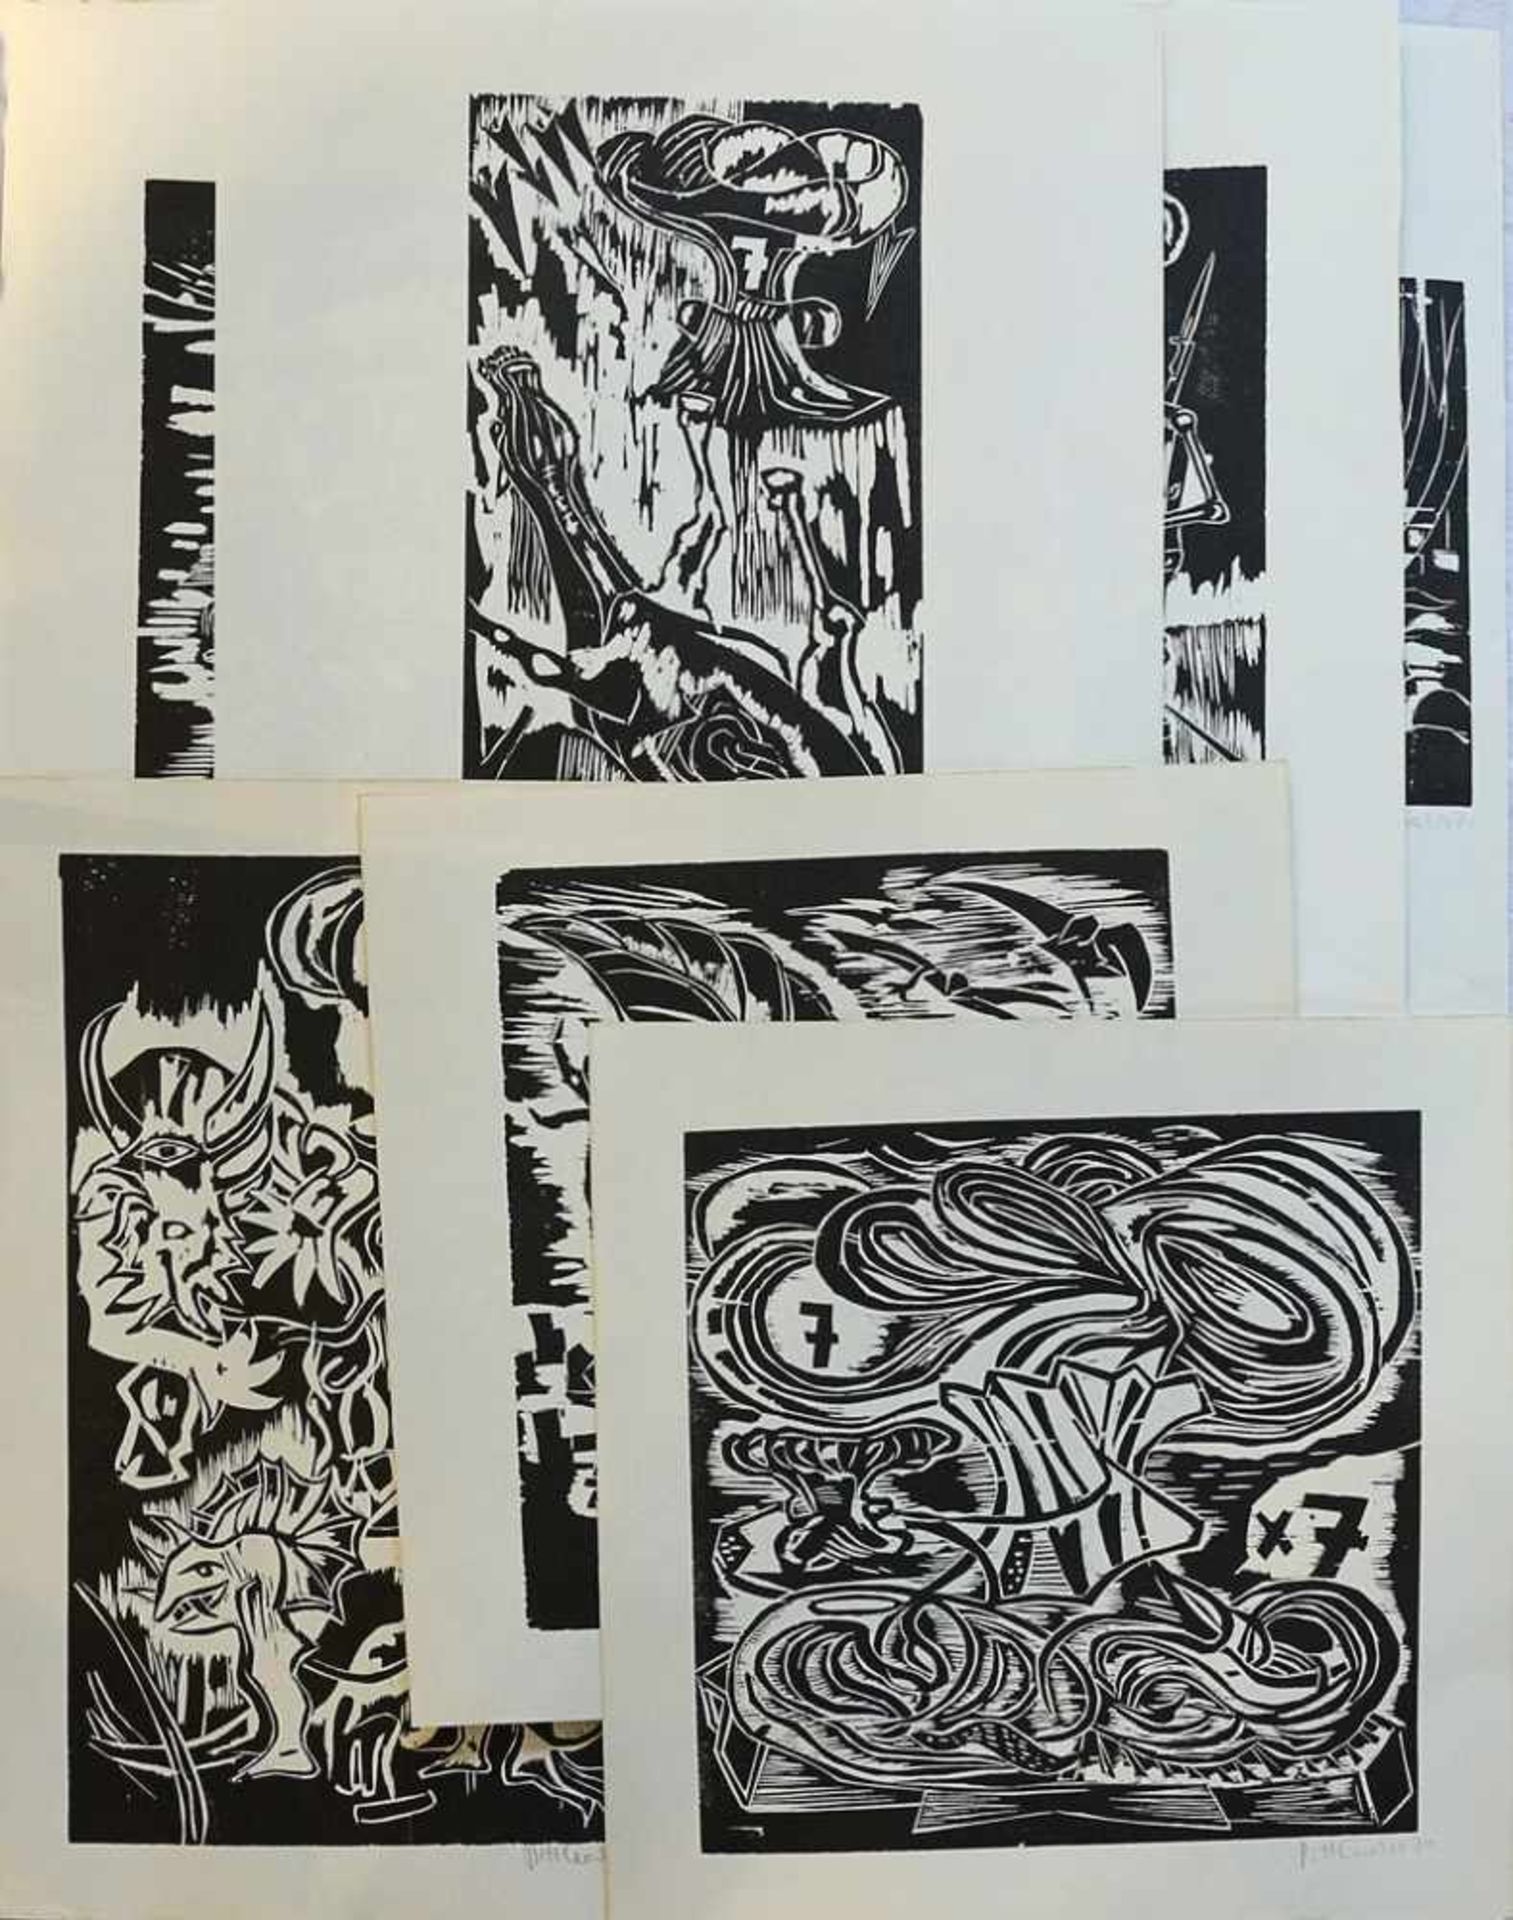 Cuerlis, Pitt 1919 - 2008, Studium an der Akademie Düsseldorf, Schüler bei Braque u. Chagall,